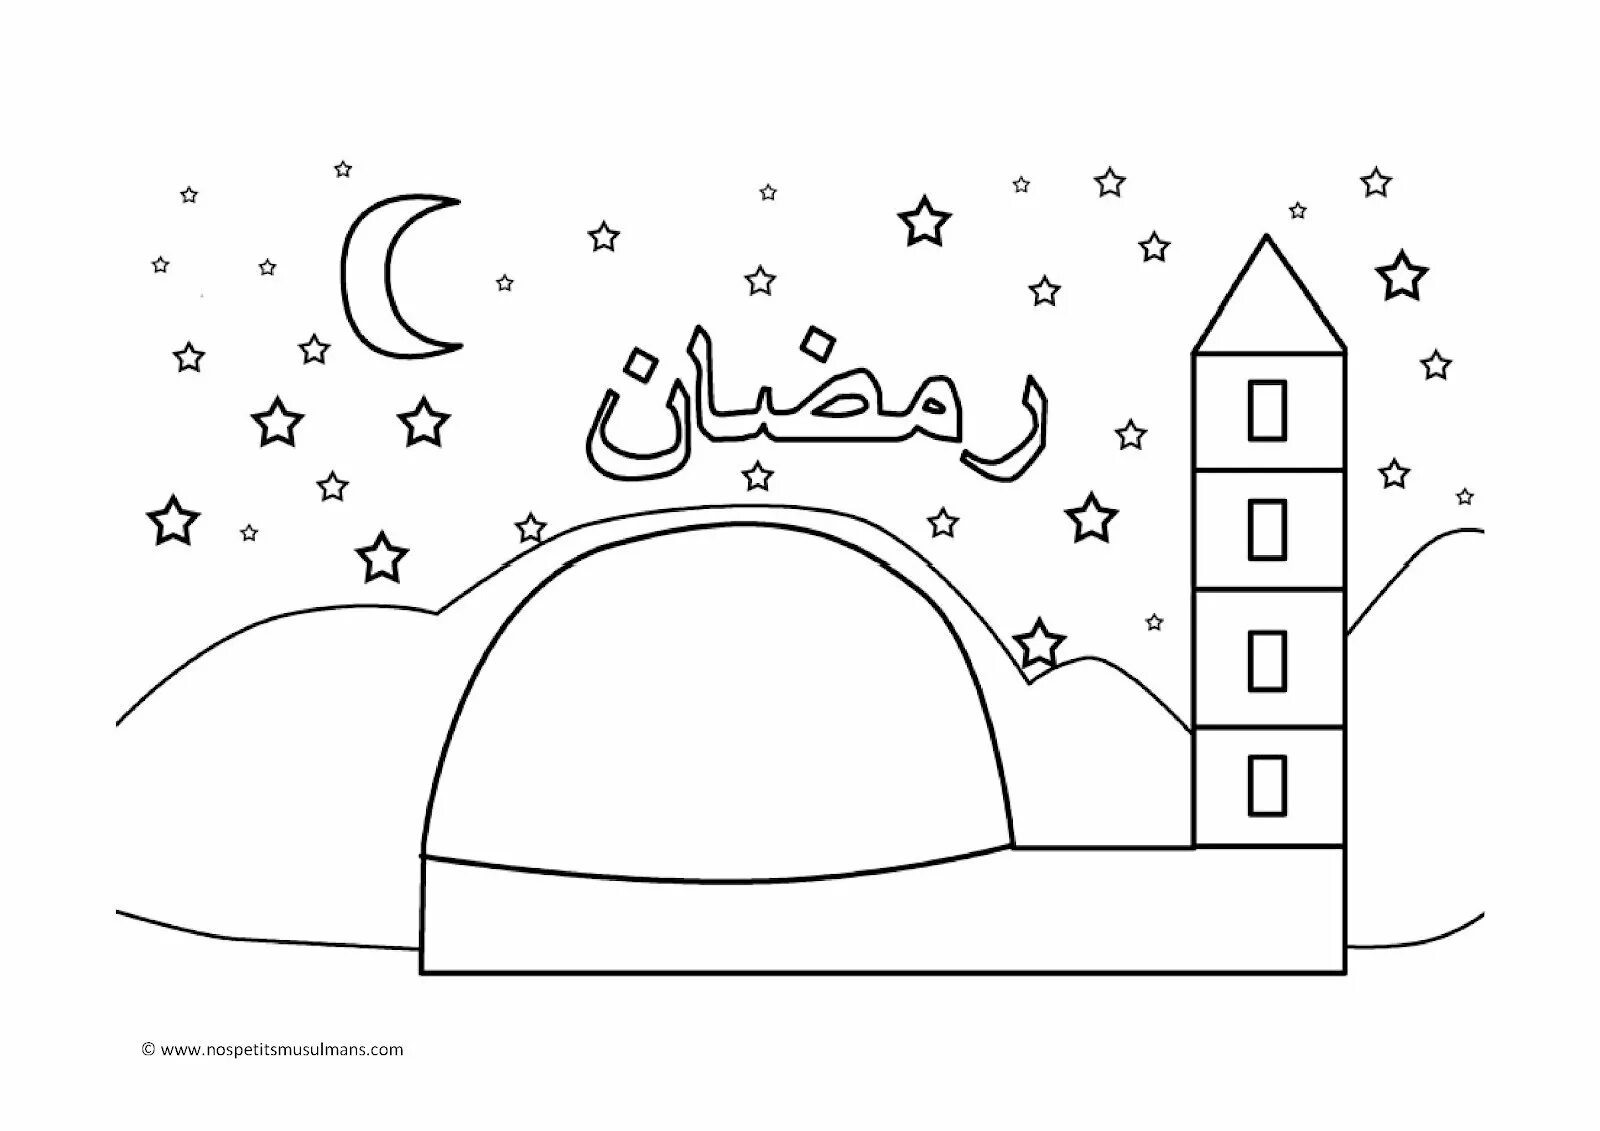 Раскраска рамадан для детей. Мусульманские раскраски для детей. Задания на Рамадан для детей. Раскраска Рамадан для дошкольников.